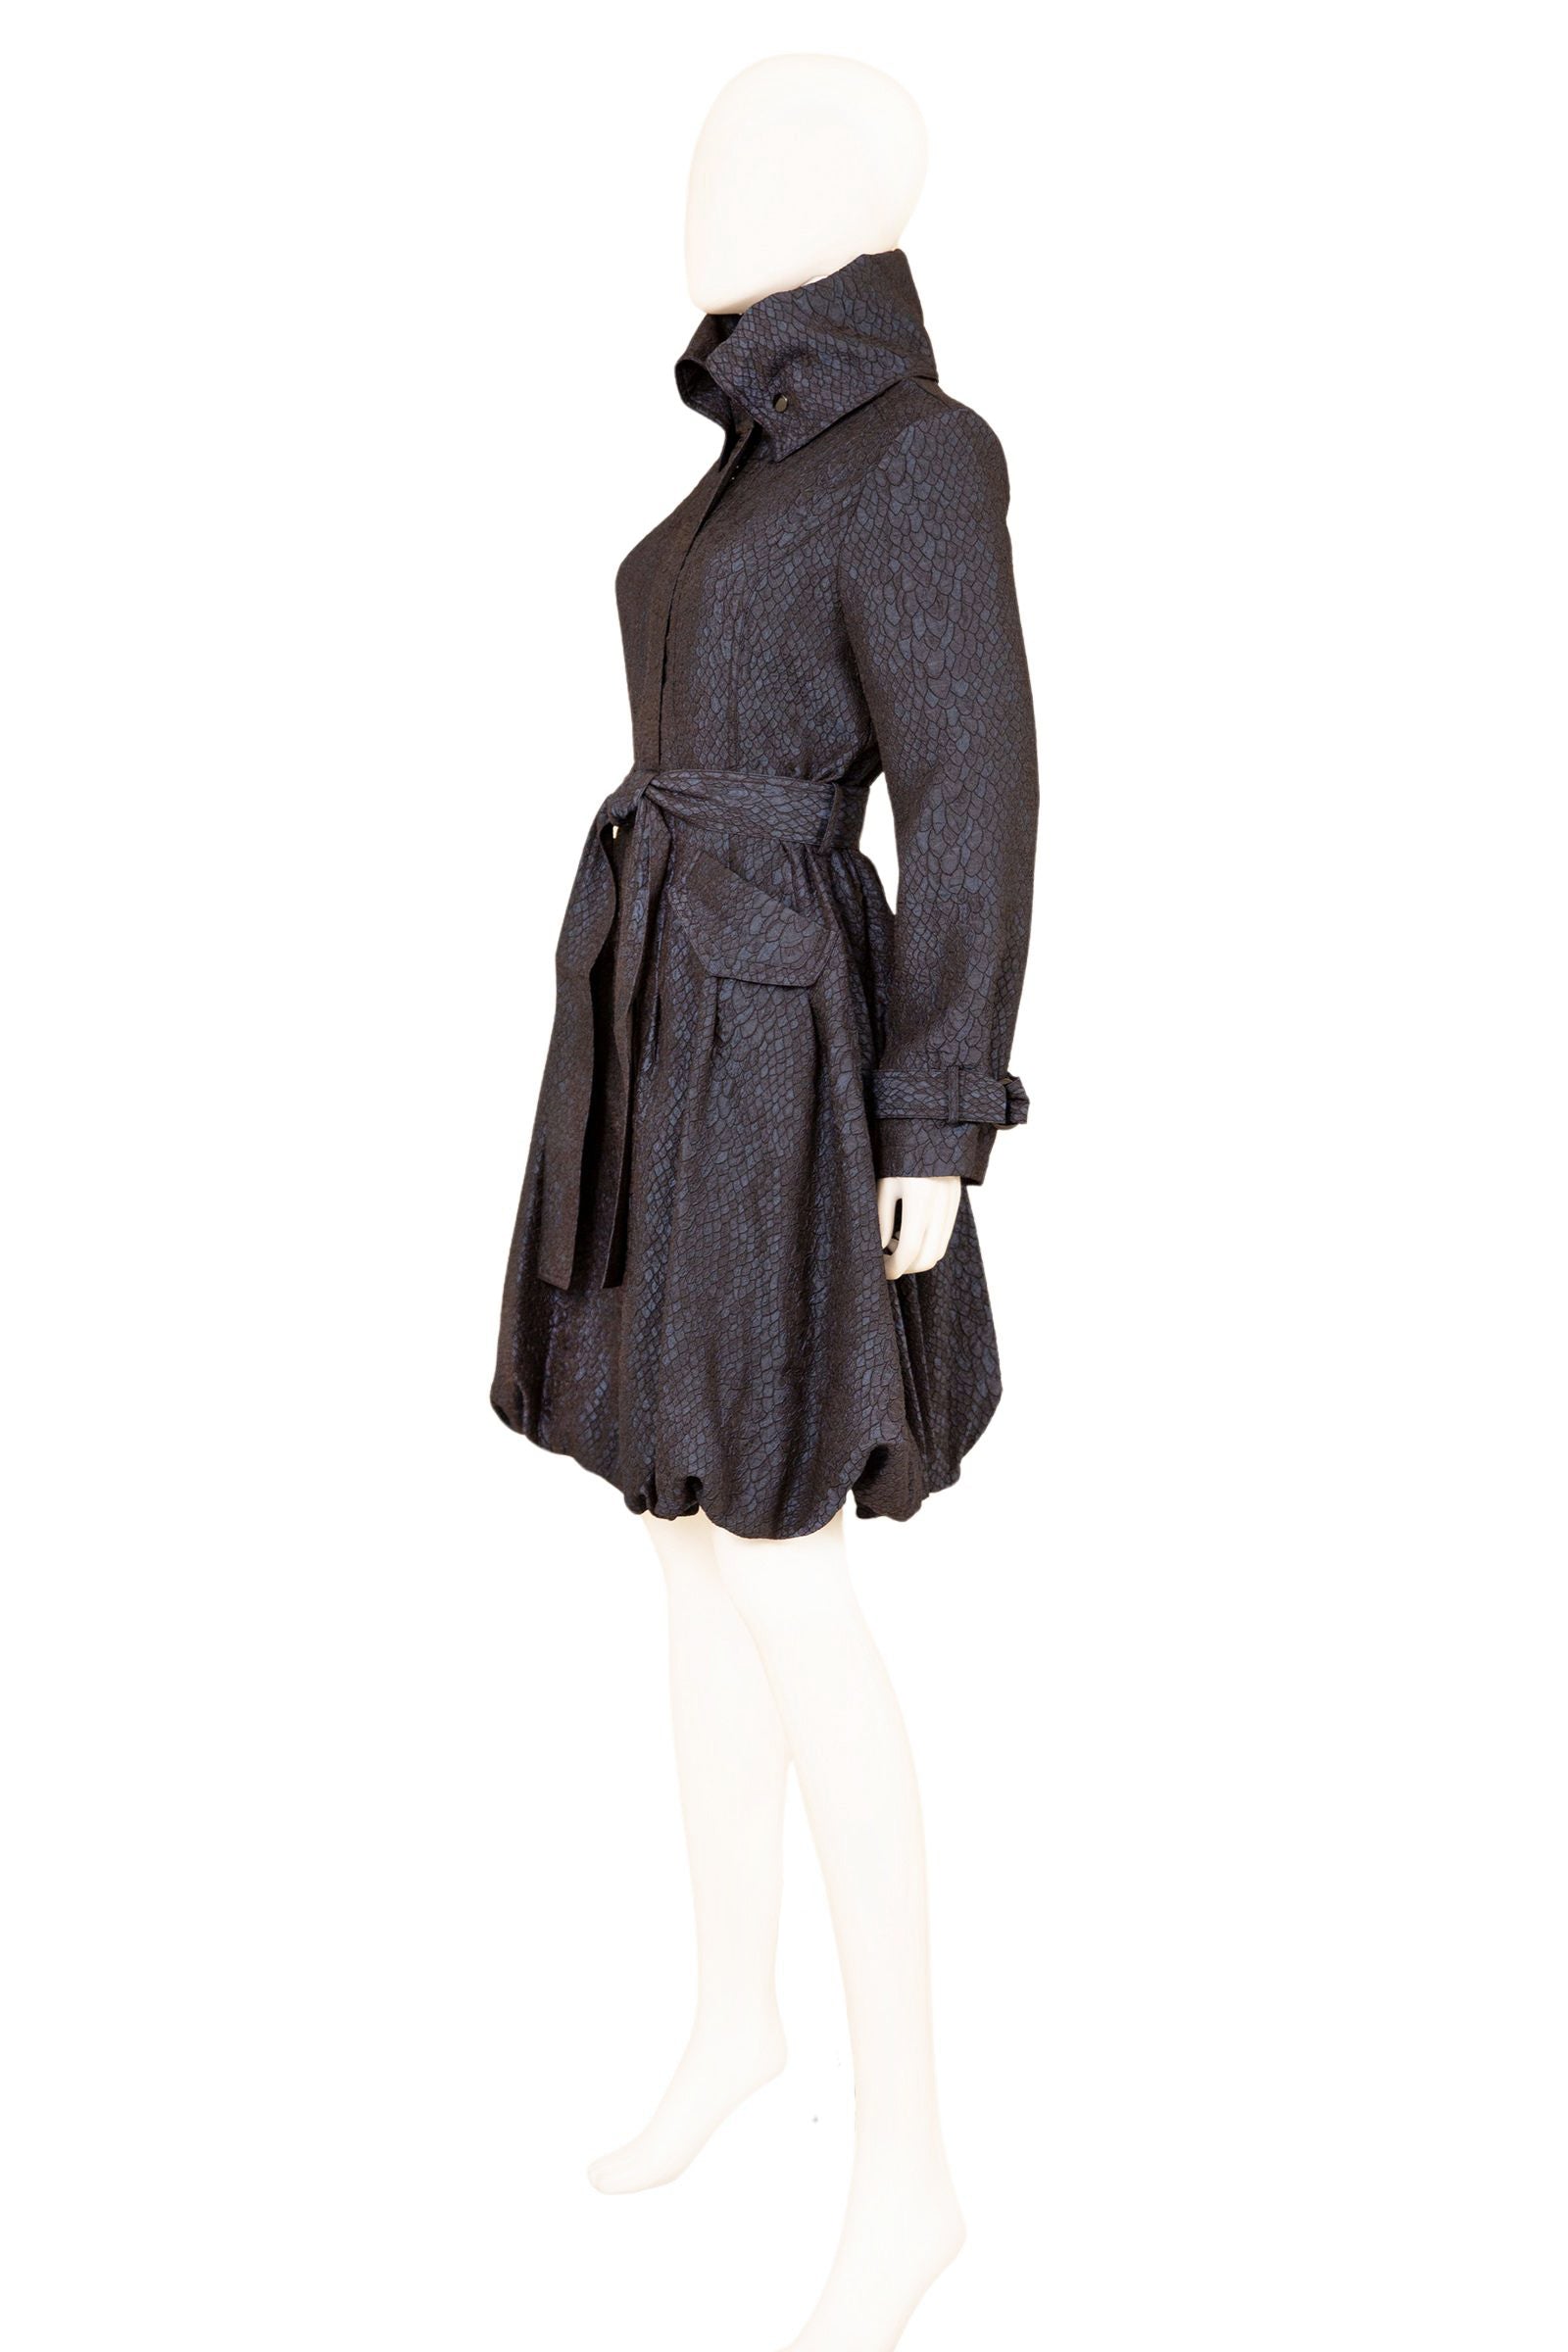 Jacquard Bubble Coat Dress - CARINE